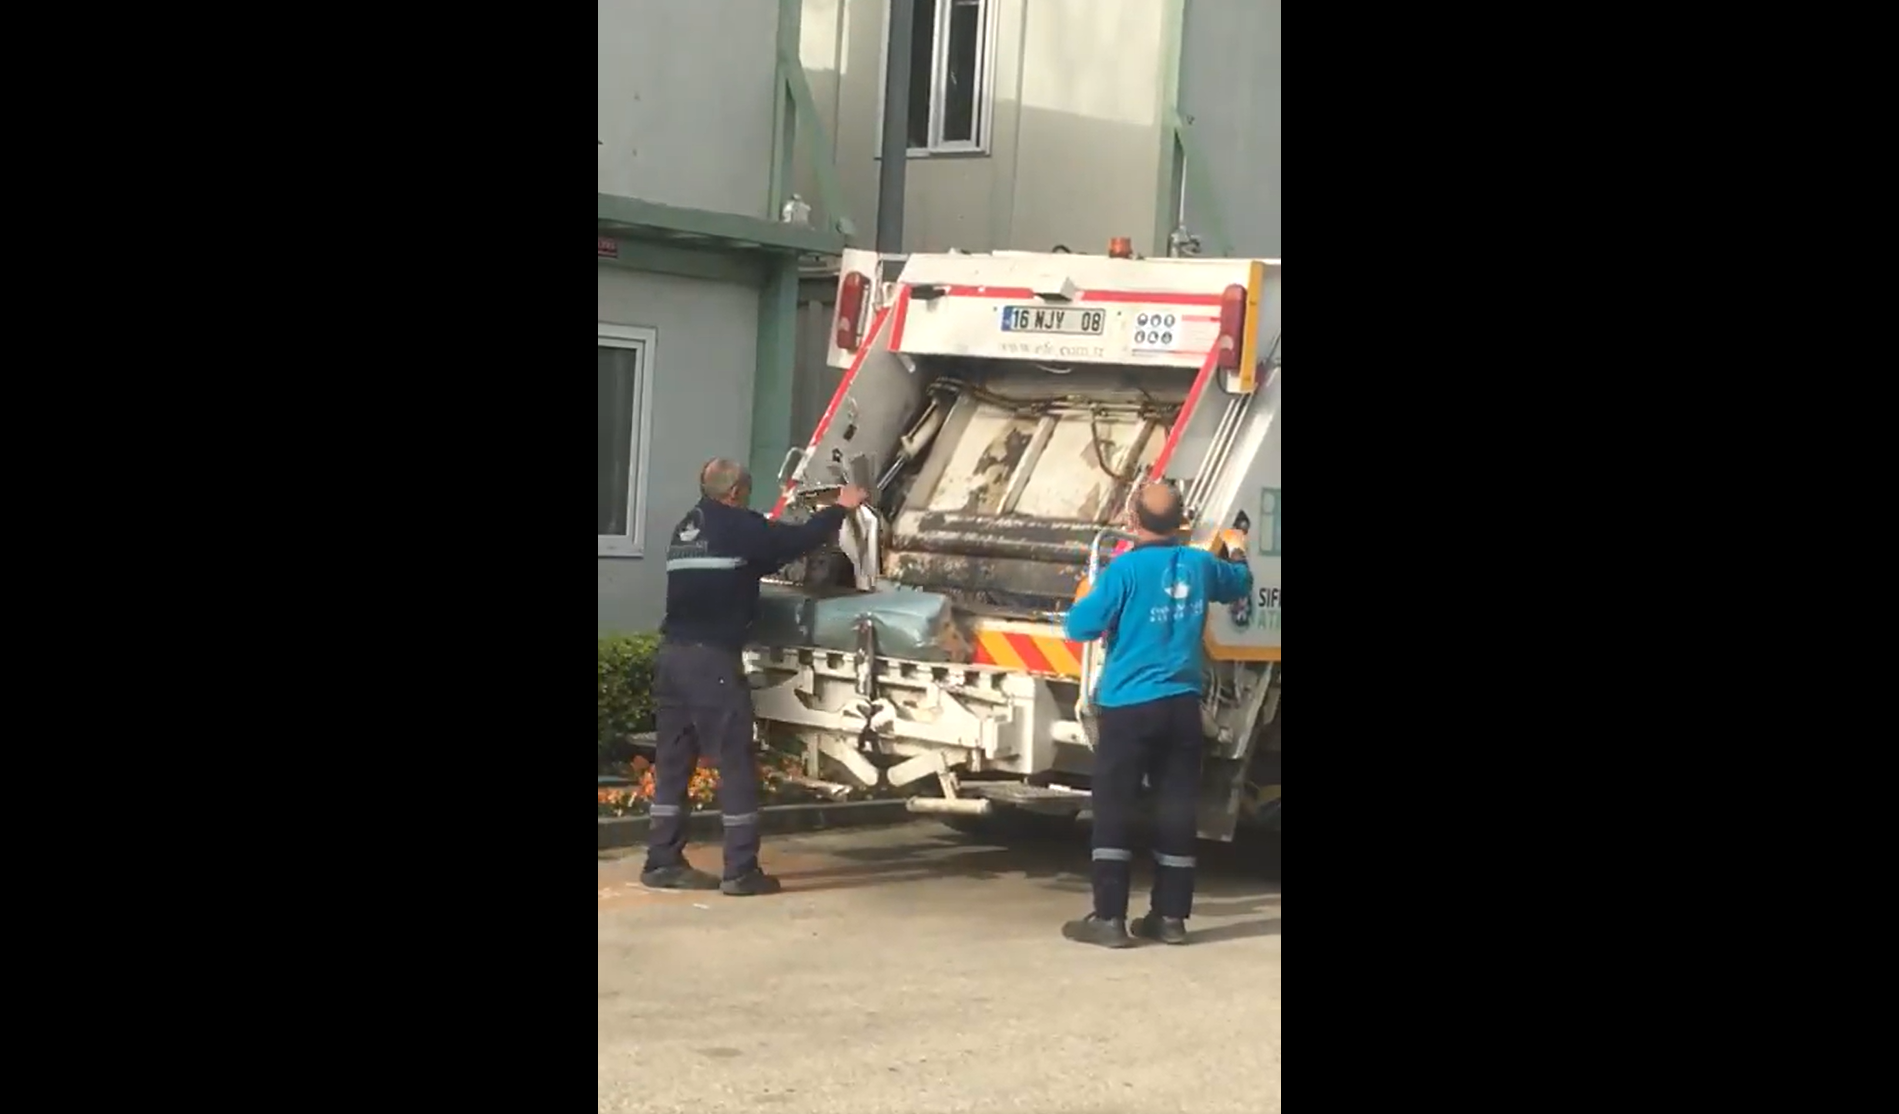 İddia: AKP'nin kaybettiği Osmangazi'de belediye evrakları çöp arabasına atılırken görüntülendi